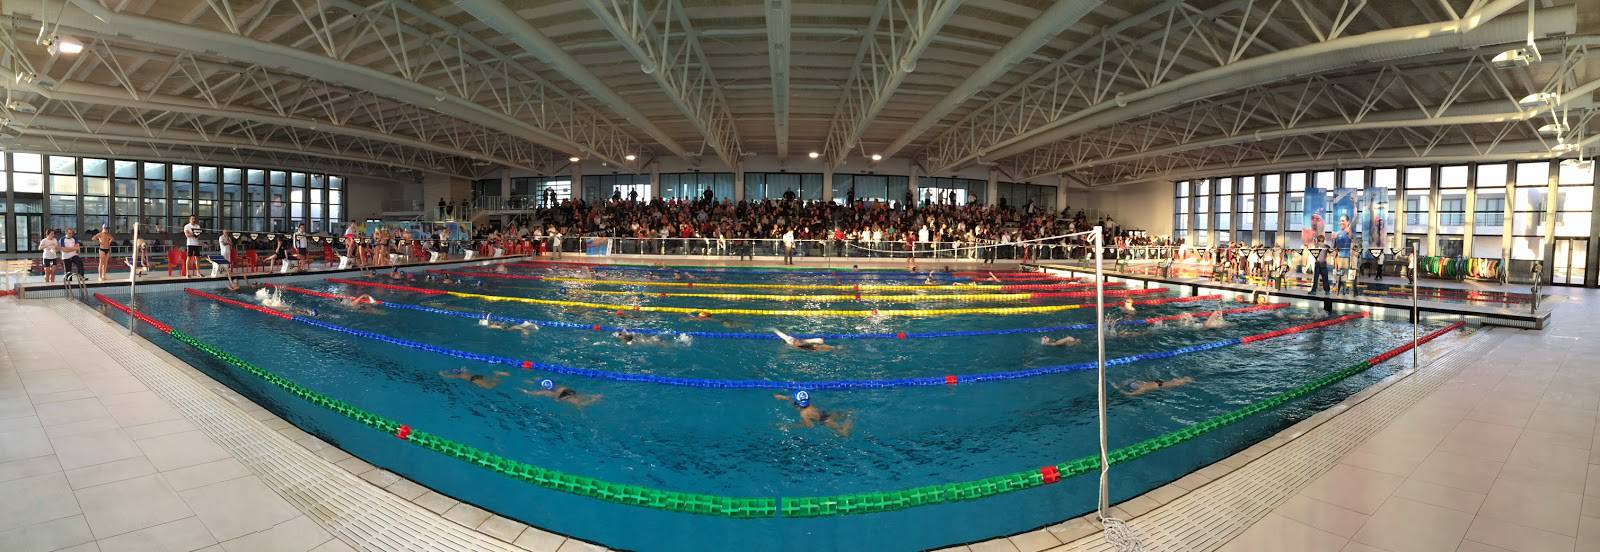 Ostia, riaperto il Polo natatorio per Greg Paltrinieri, Gabriele Detti e altri nazionali